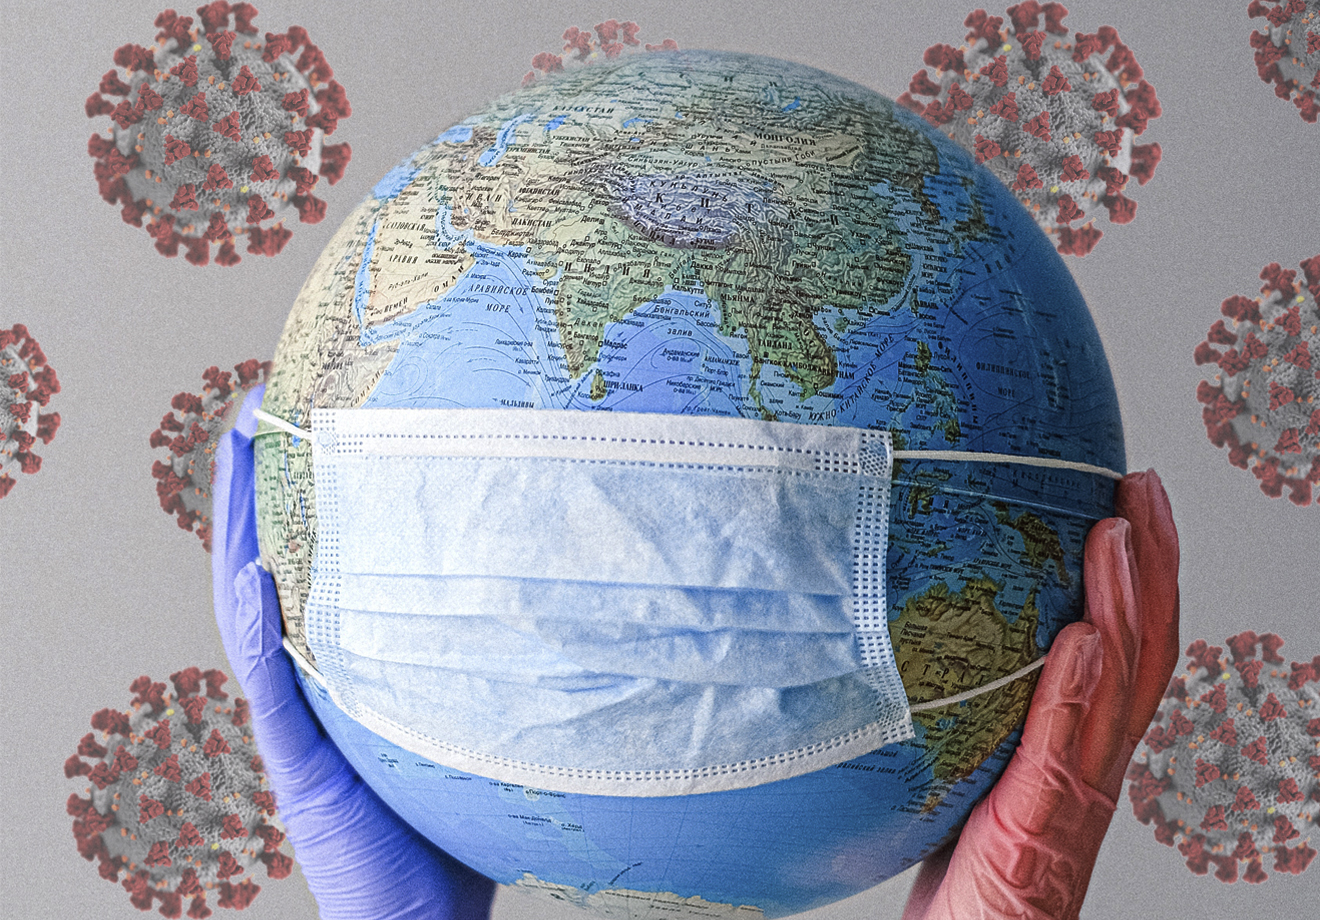 Entenda o risco de uma nova pandemia | Guia do Estudante